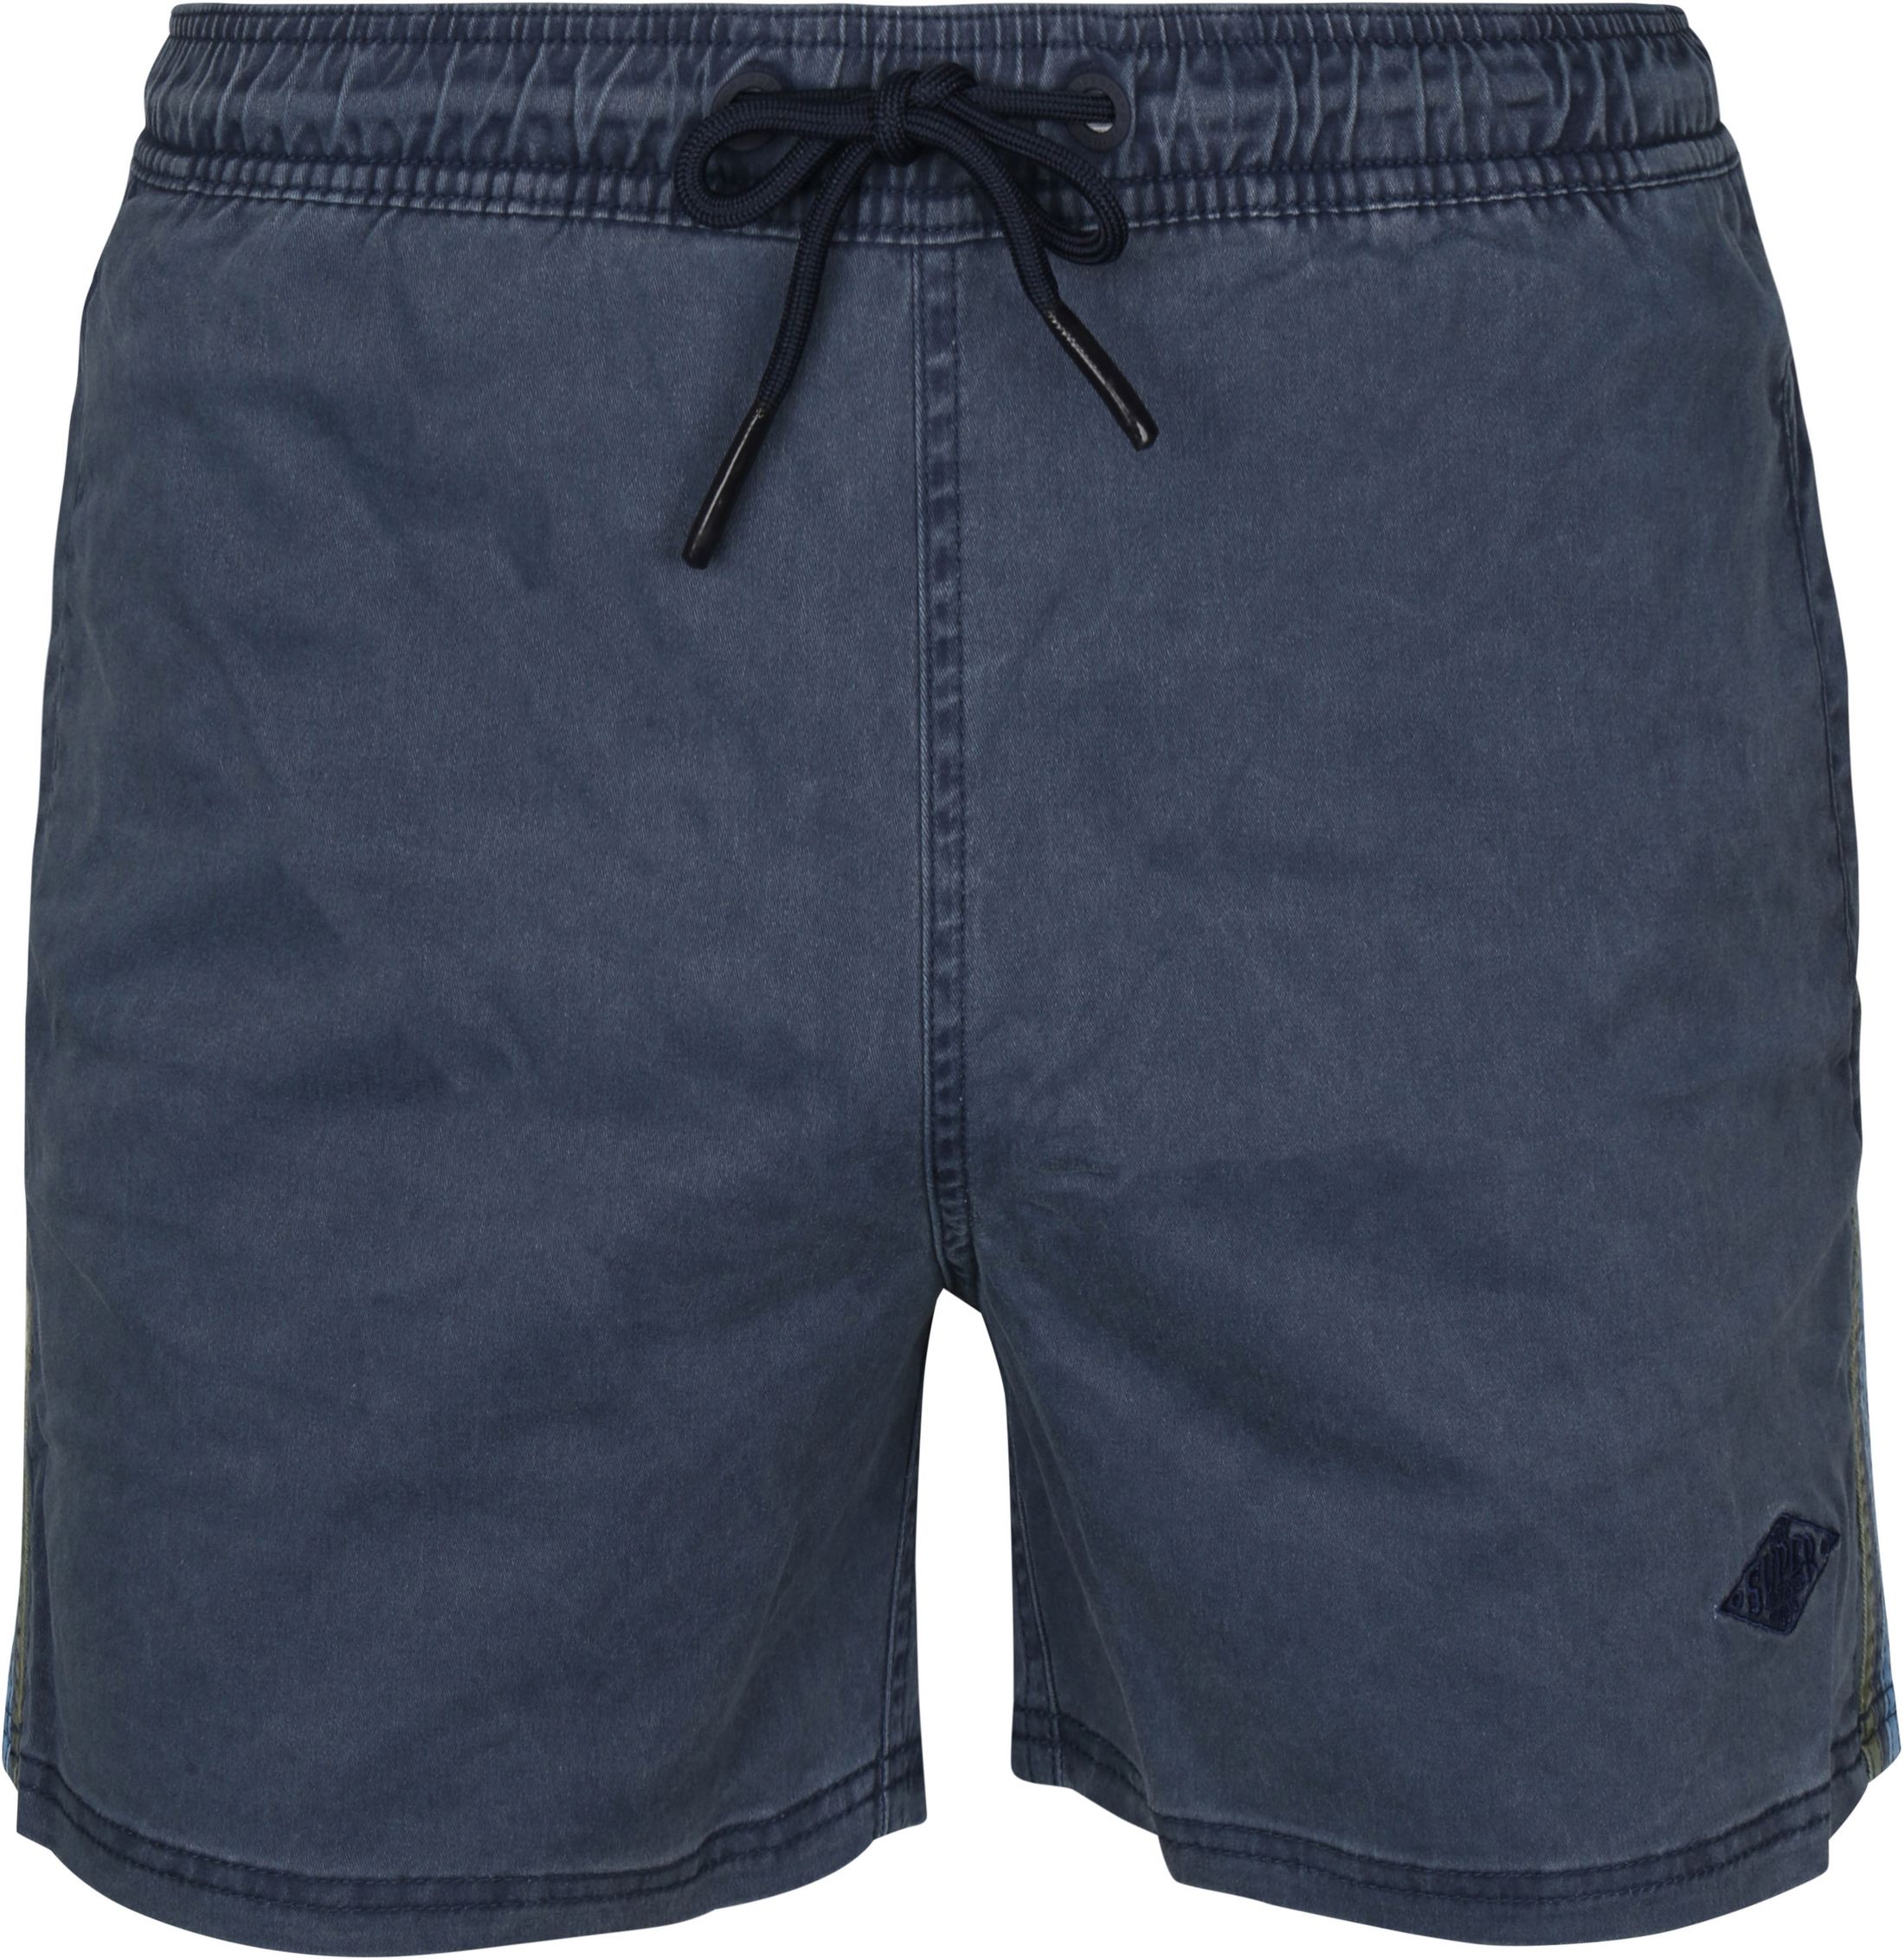 Superdry Vintage Stripe Shorts Dark Dark Blue Blue size L